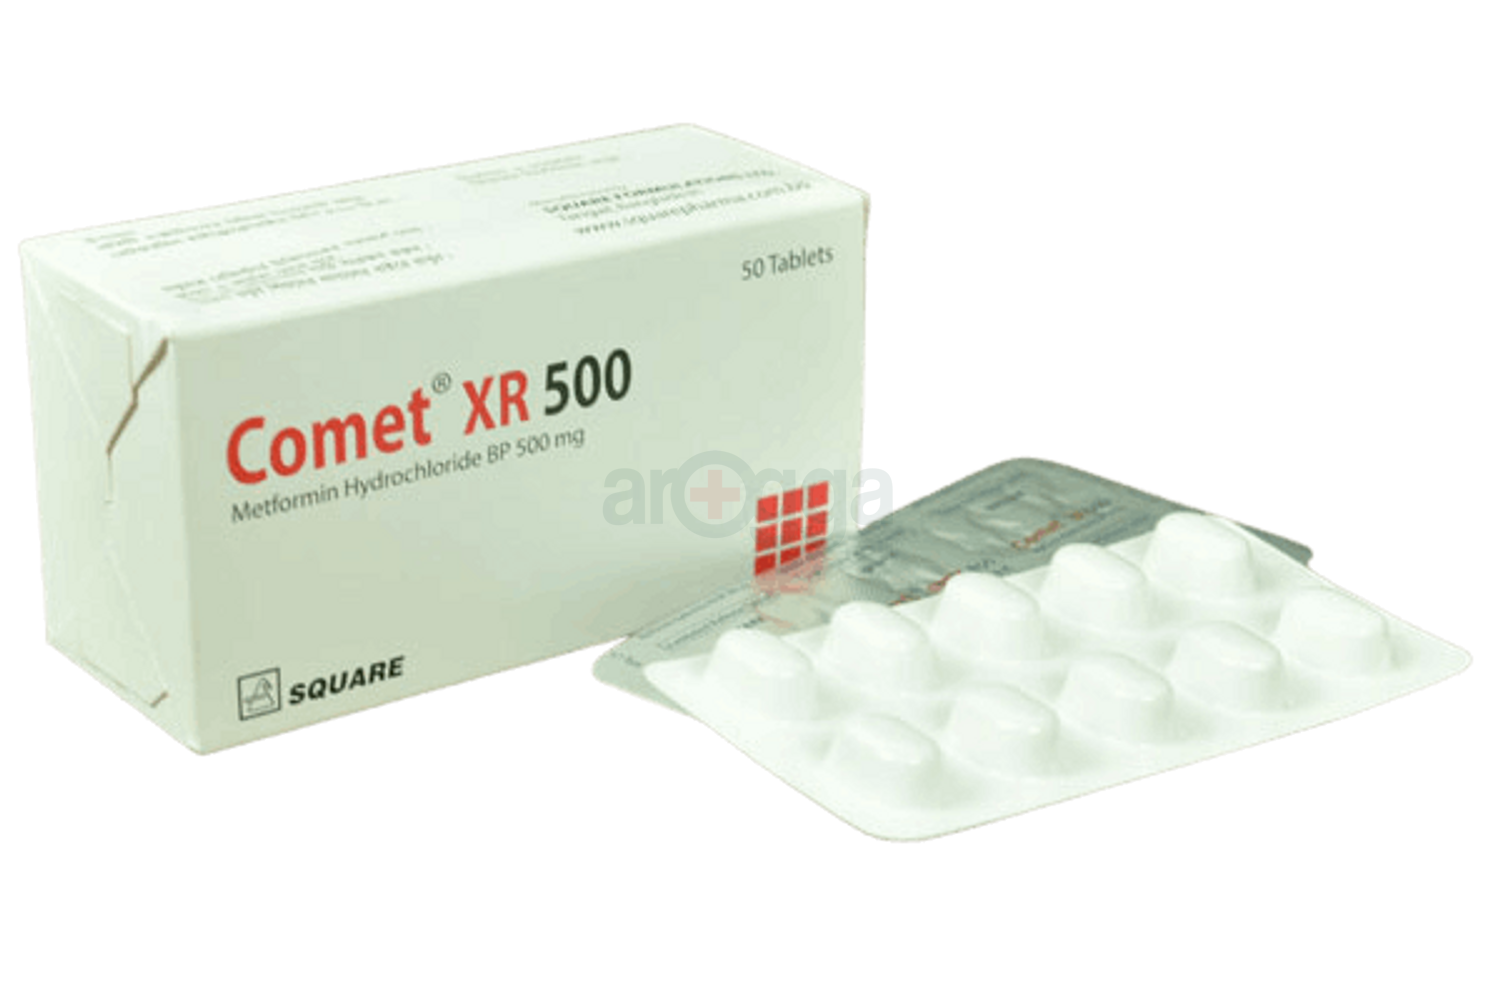 Comet XR 500